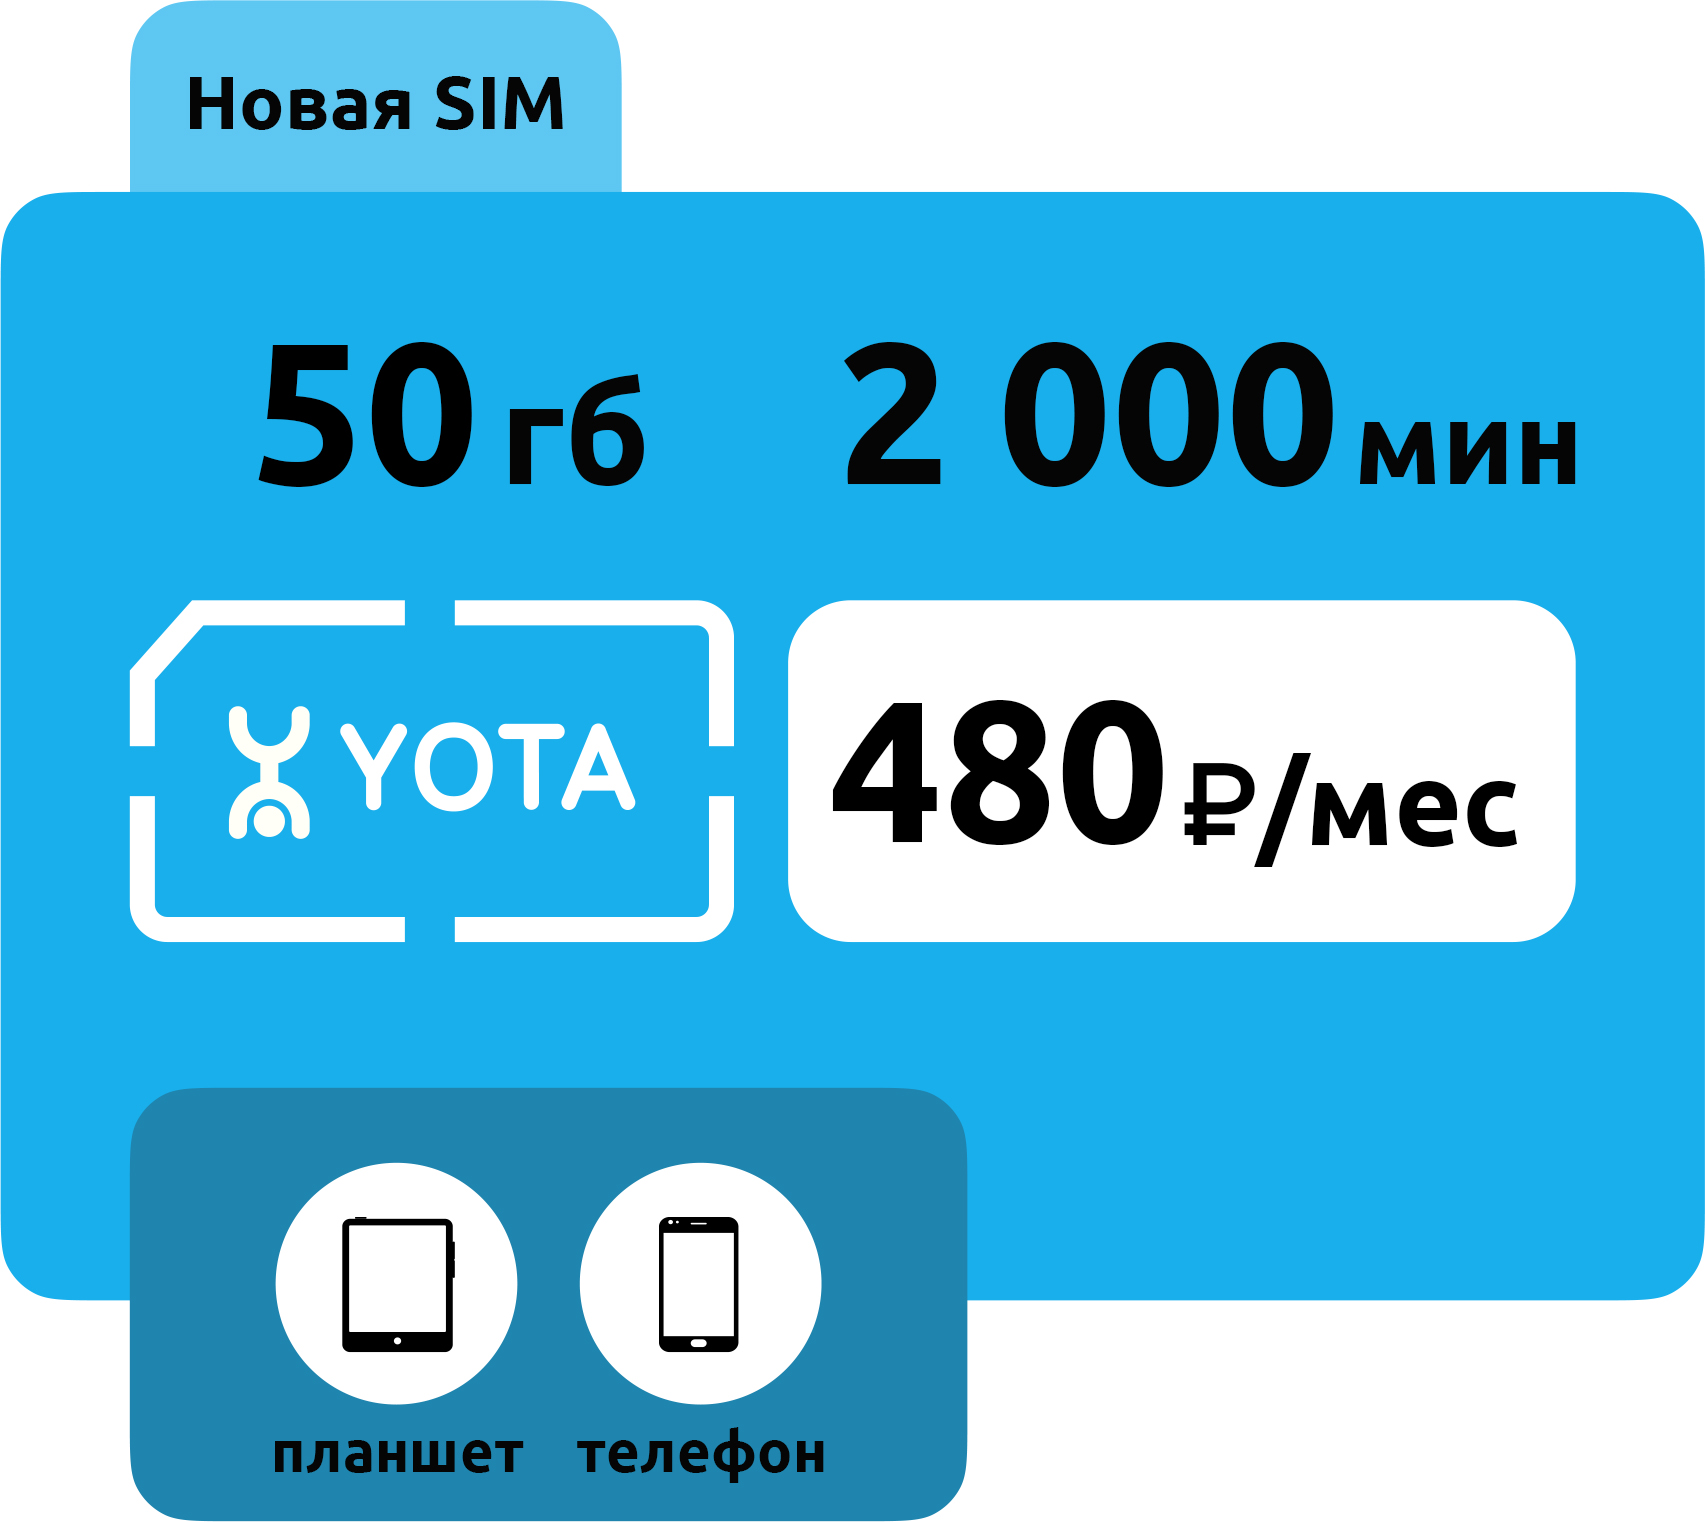 SIM-карта Yota 480 руб/месяц (50 ГБ)